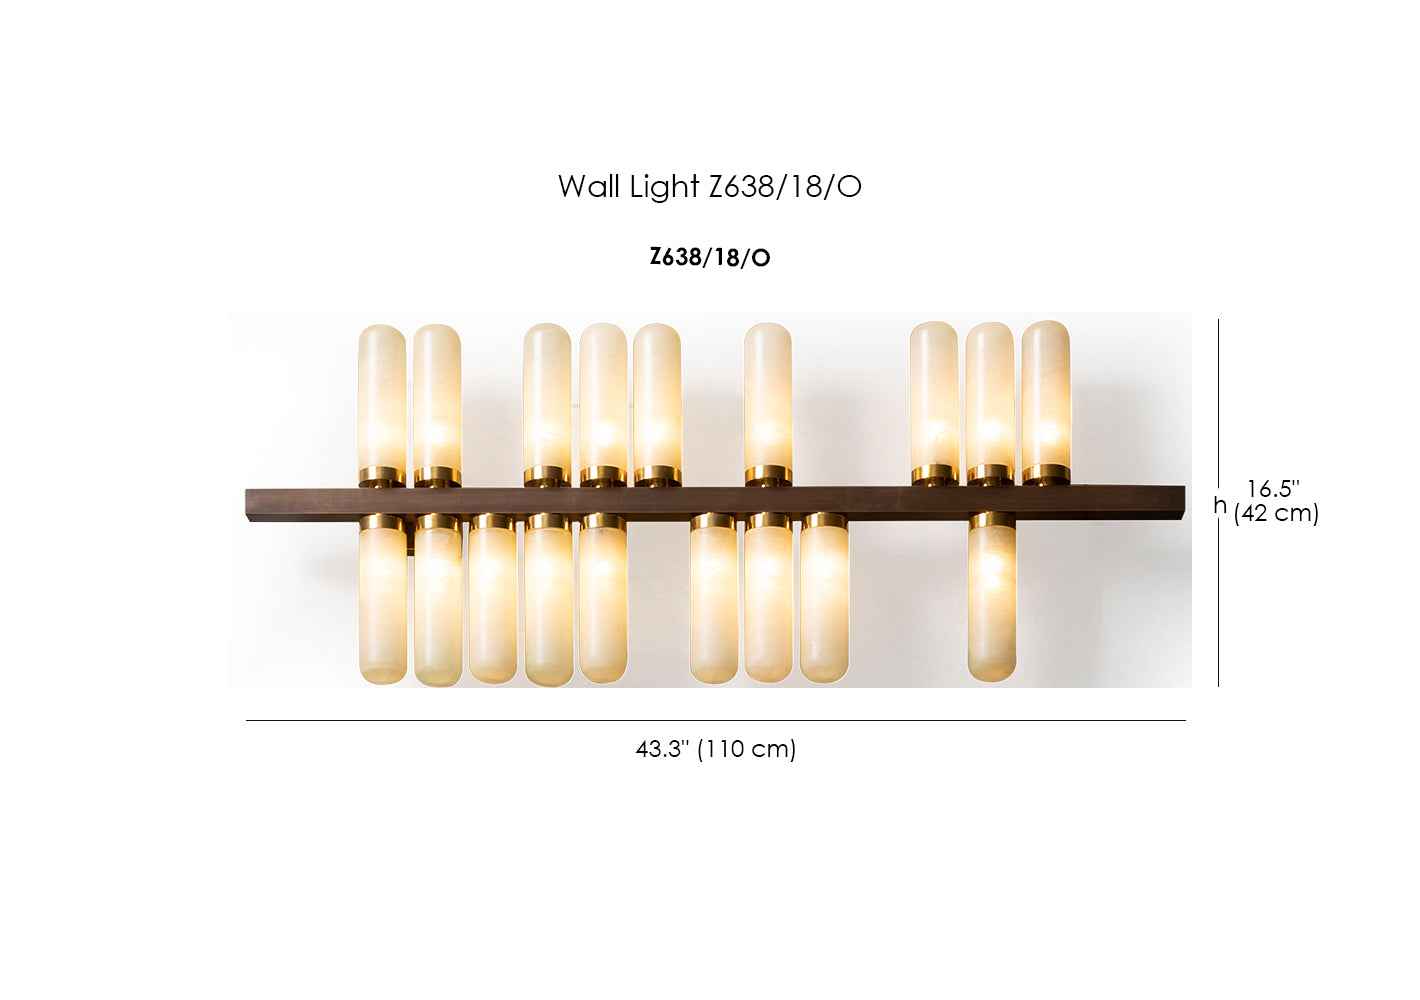 Wall Light Z638/18/O